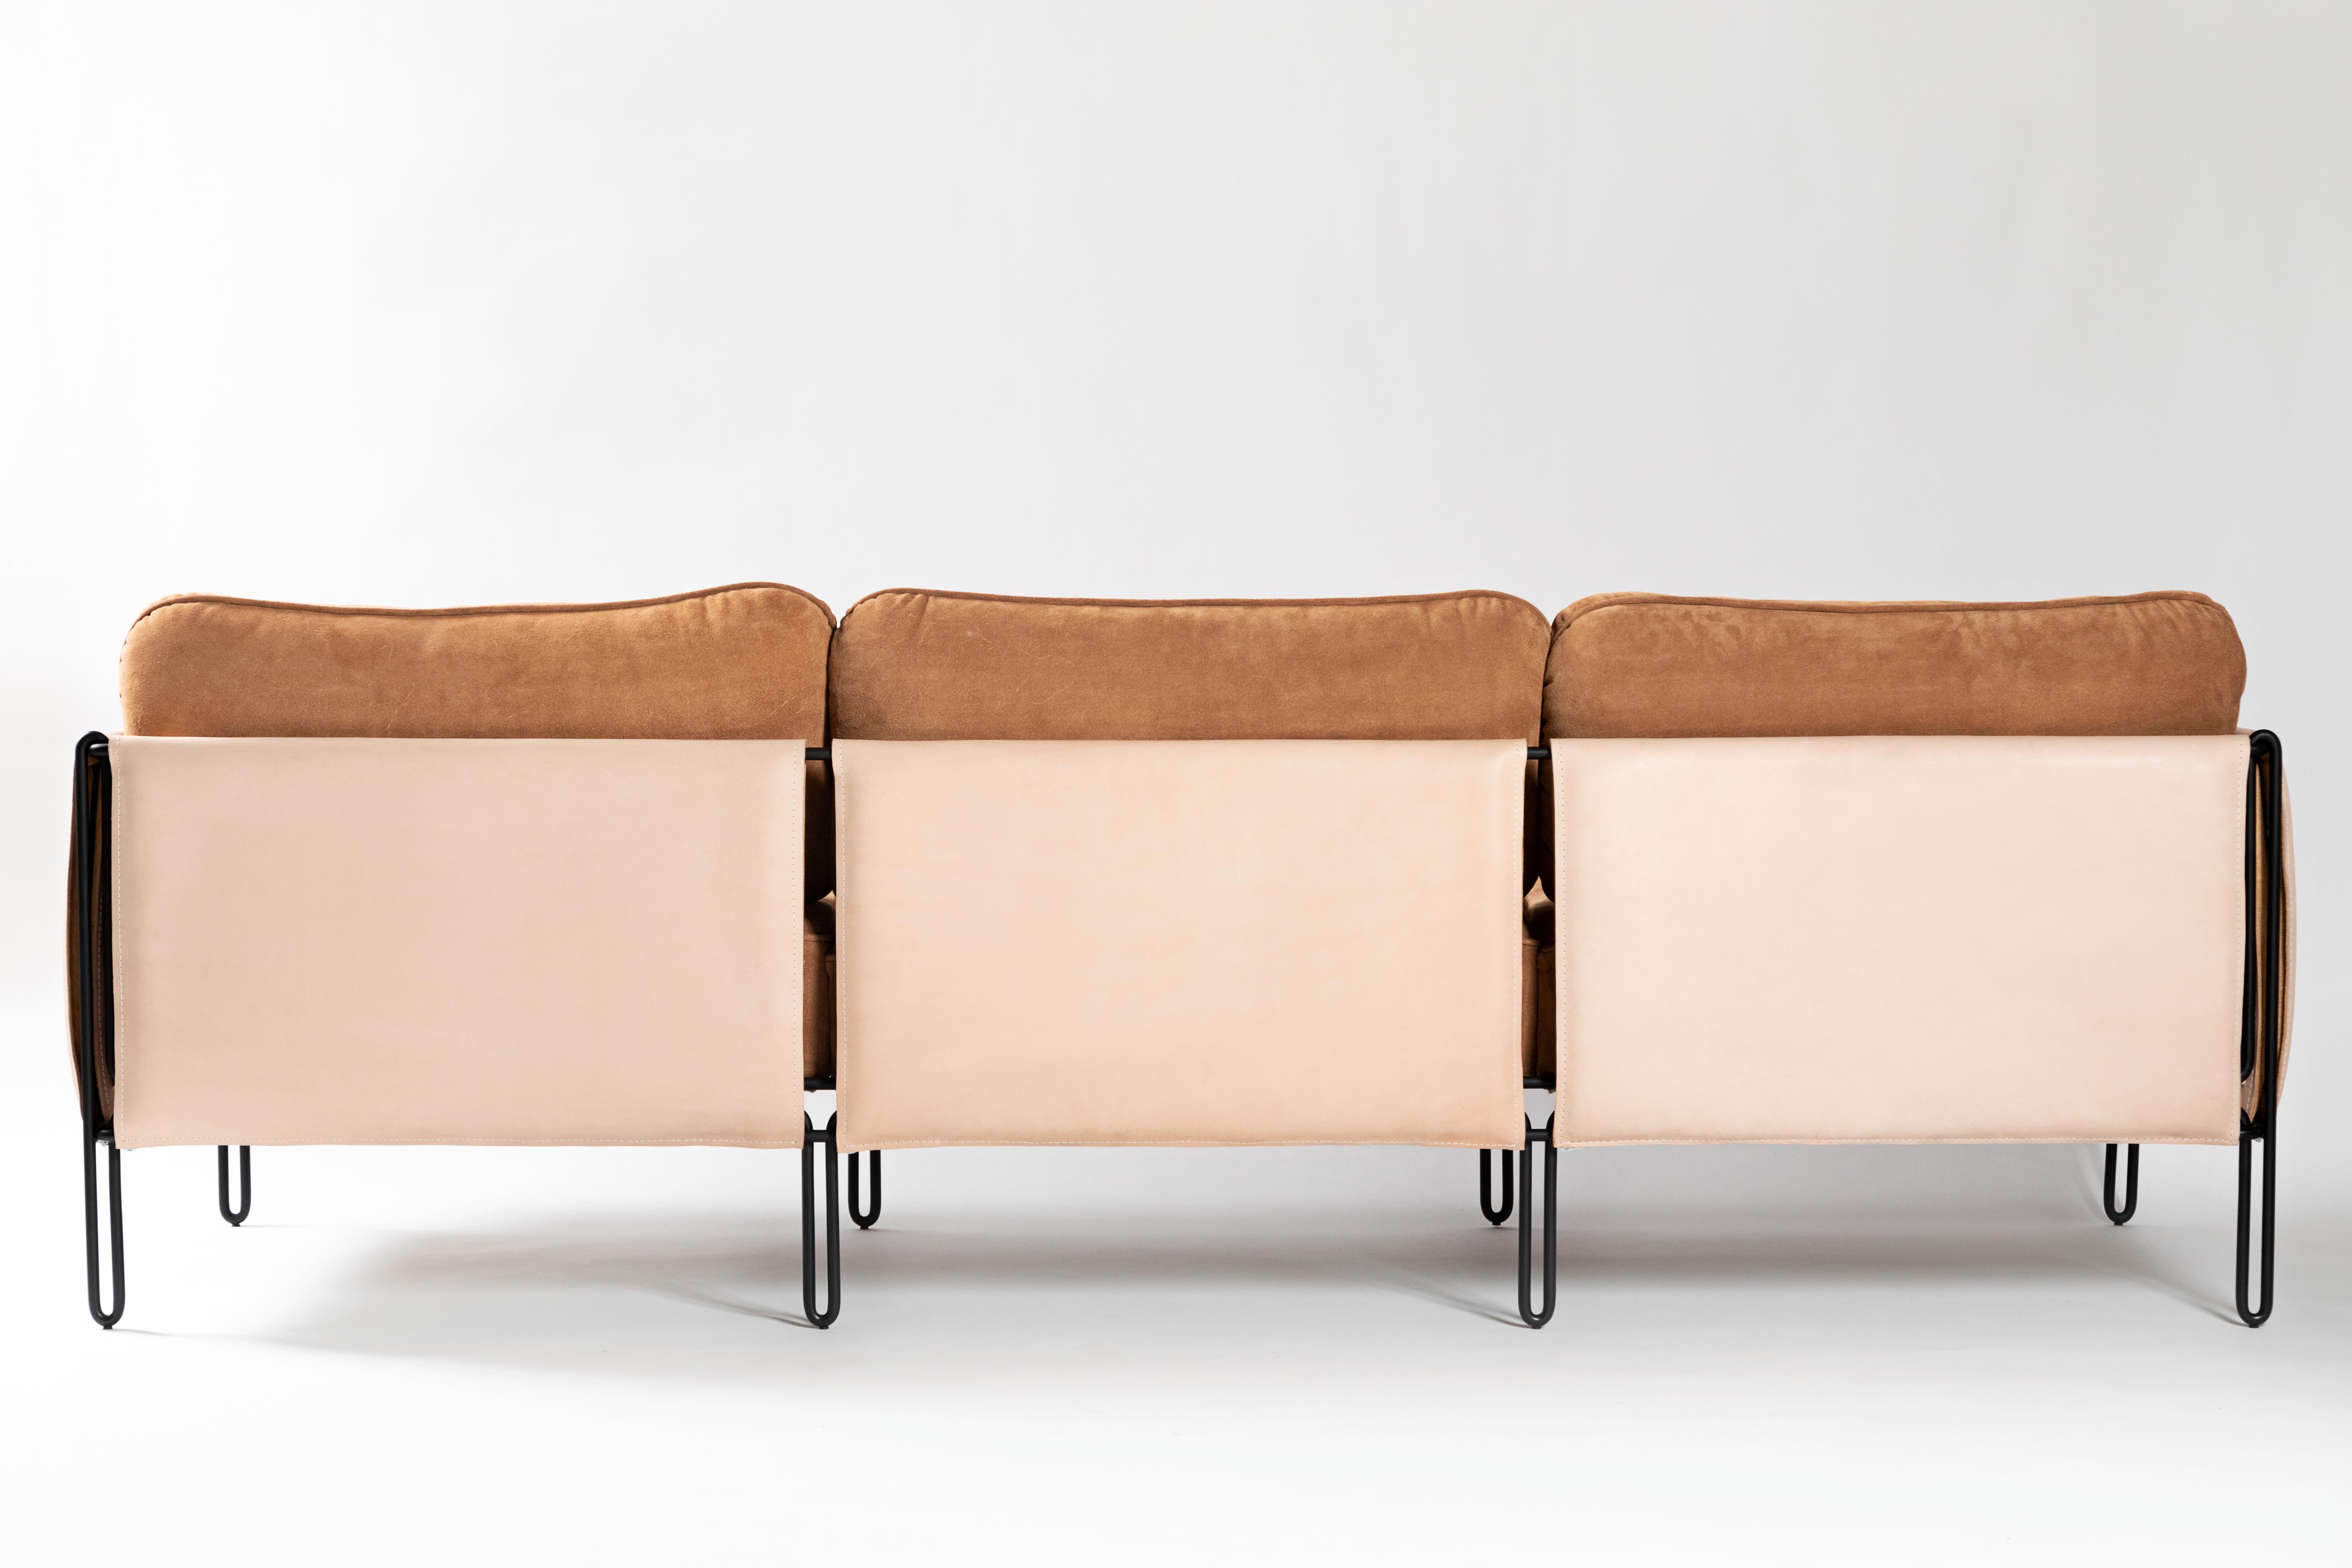 Dieser preisgekrönte Minimalist  sofa aus Stahl und Leder ist mit geometrischen und architektonischen Überlegungen entworfen. Die Leichtigkeit wird durch die zarte Eisenstruktur garantiert, die den Boden sanft abstützt. Die Struktur des Sofas ist